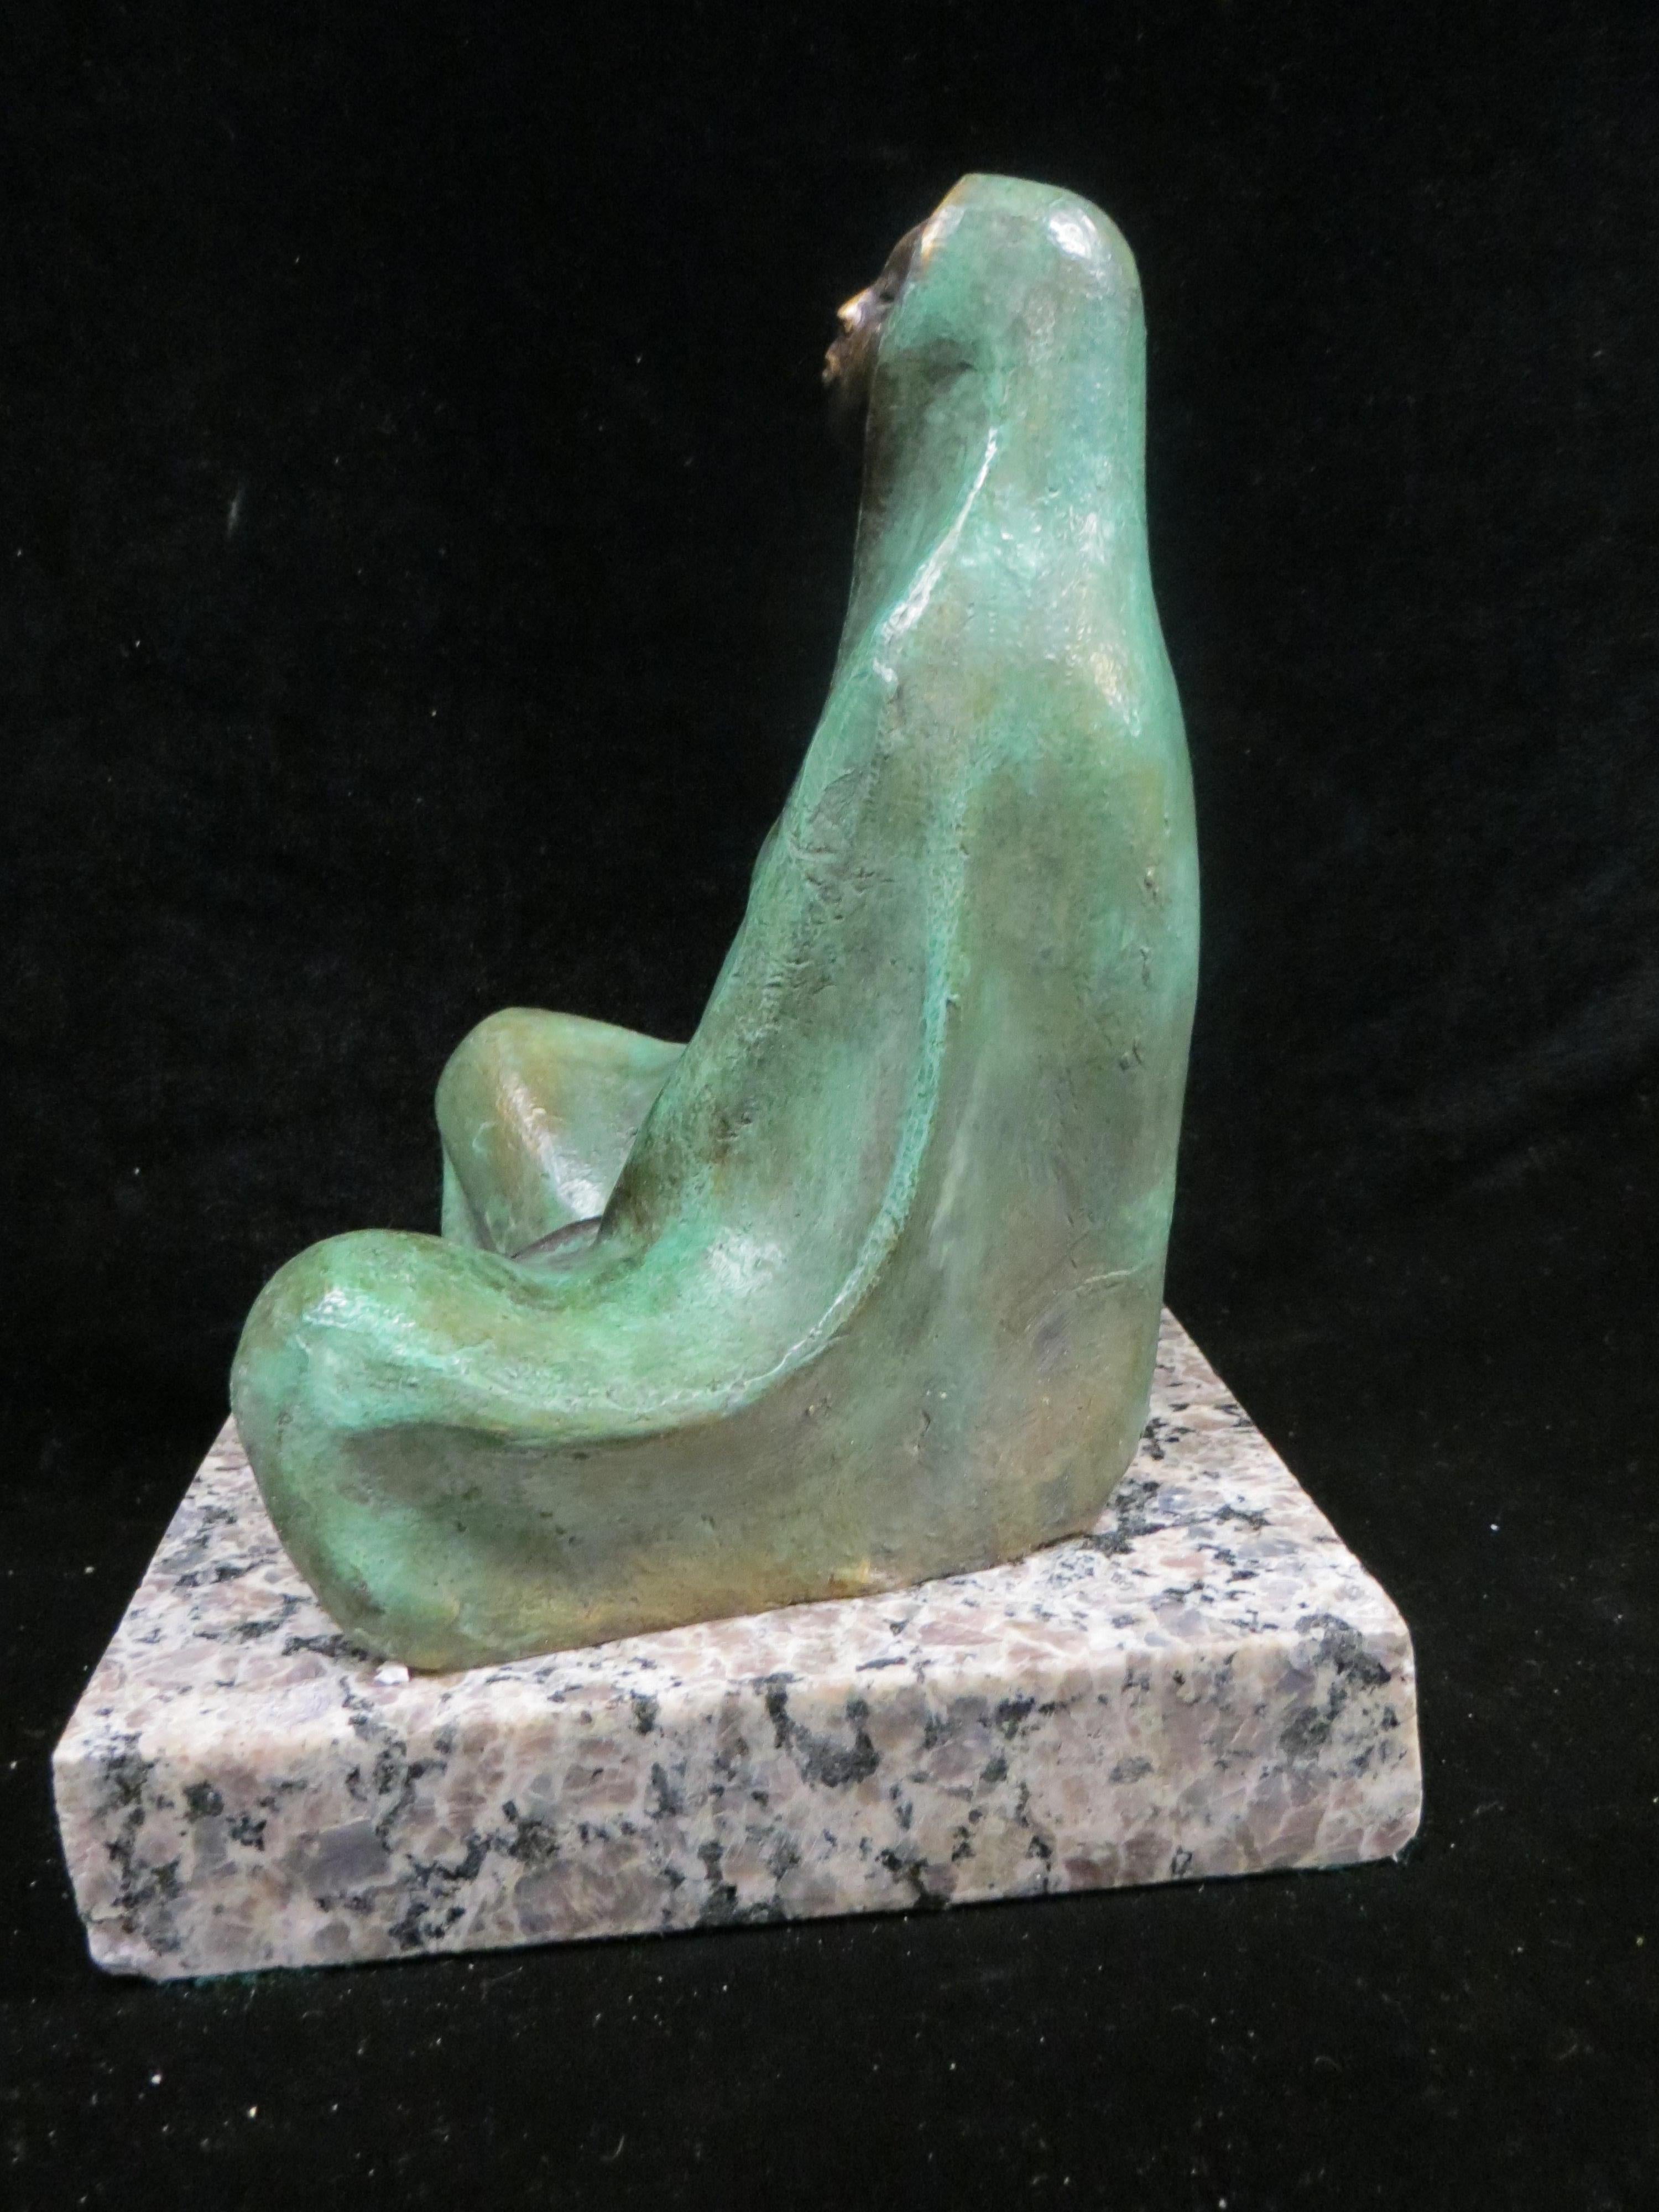   Mother Sitting by Edgar Zuniga  - Sculpture by Edgar zuniga